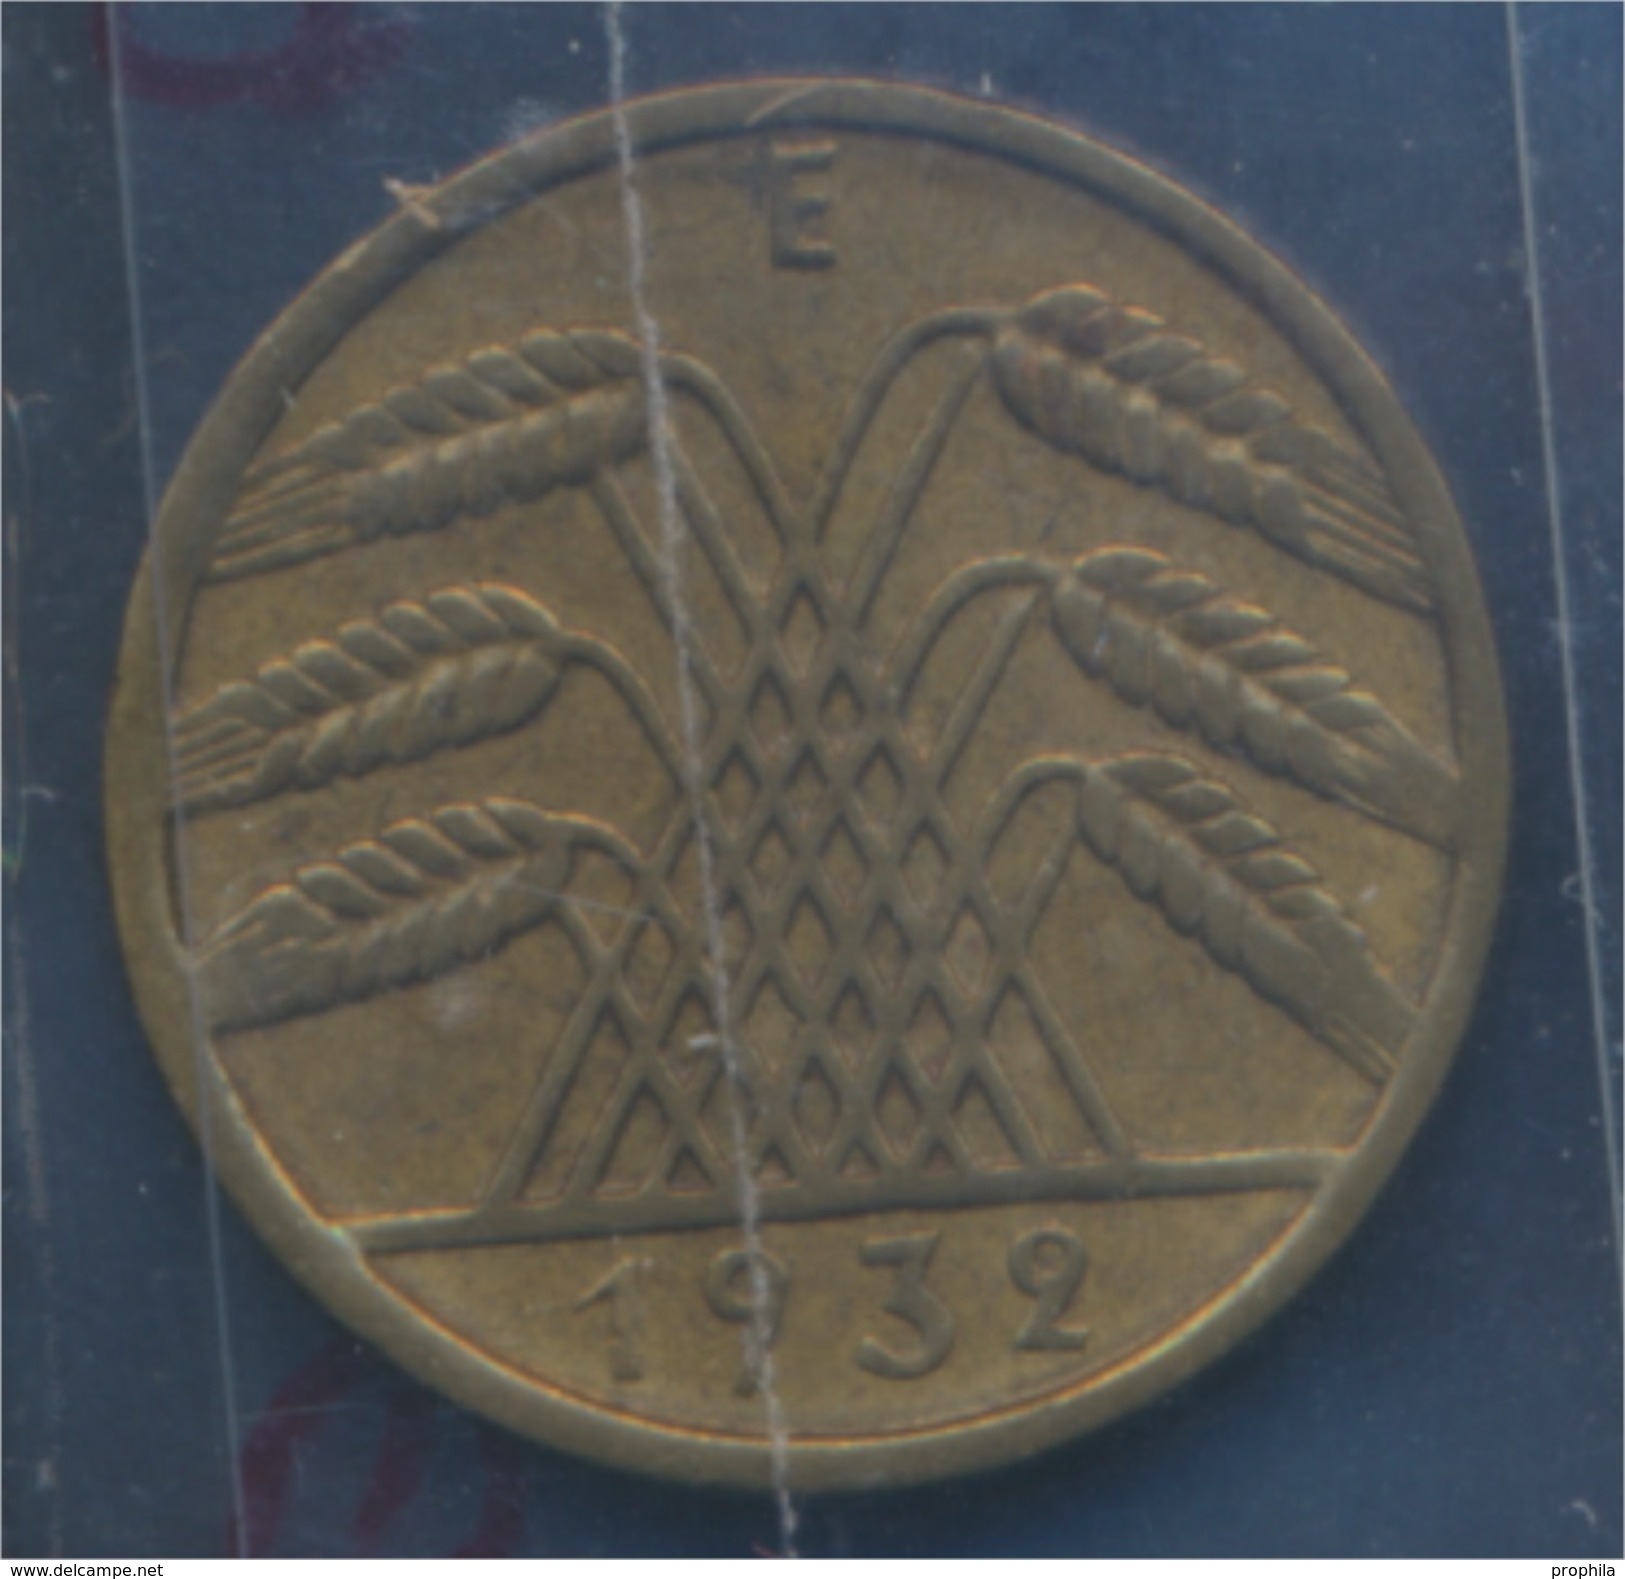 Deutsches Reich Jägernr: 317 1932 E Vorzüglich Aluminium-Bronze 1932 10 Reichspfennig Ähren (7879748 - 10 Rentenpfennig & 10 Reichspfennig